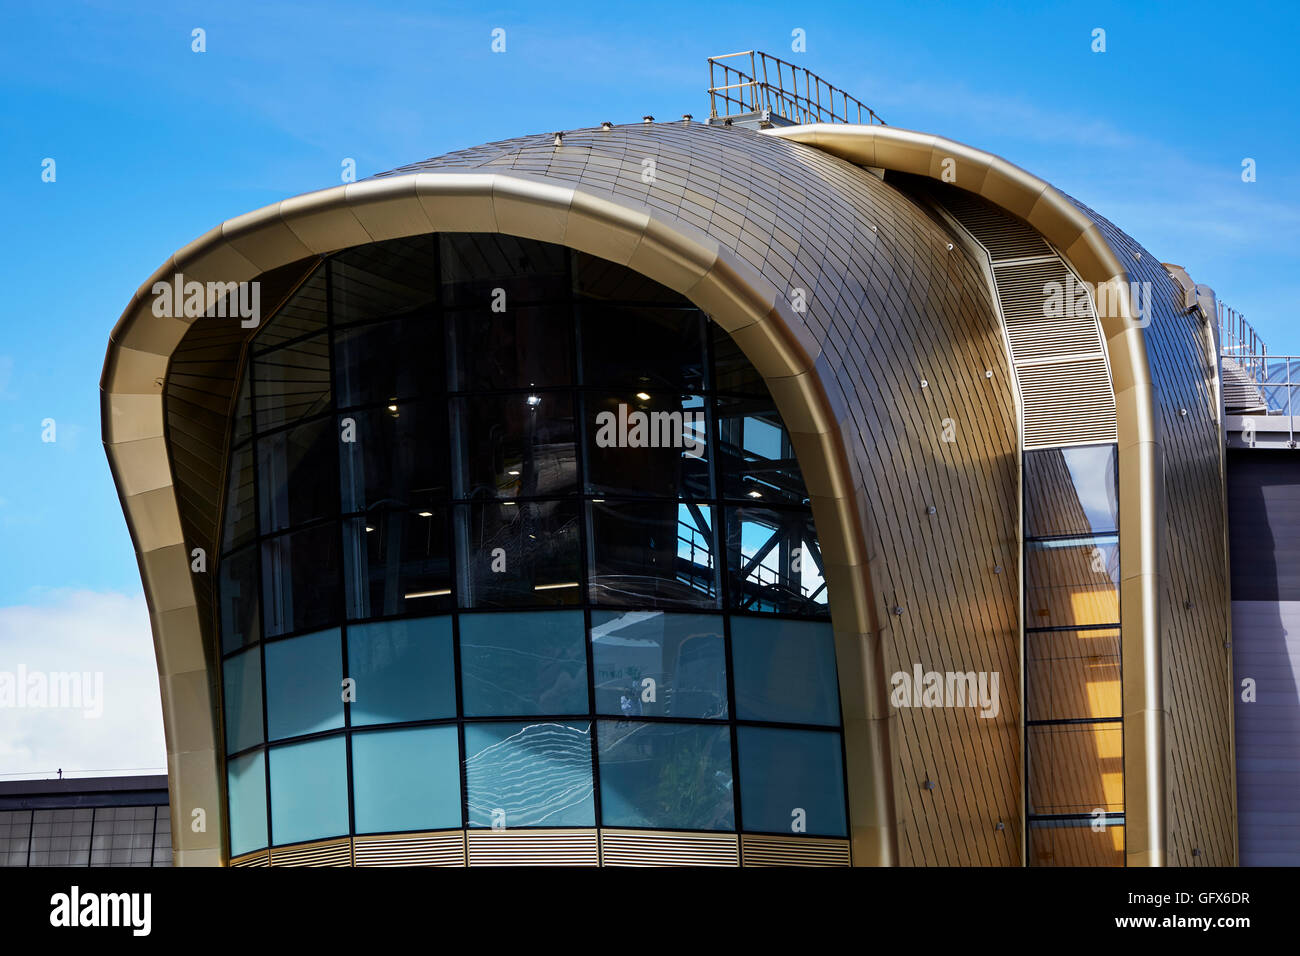 Bahnhof Leeds südlichen Eingang Dach Schindeln goldfarben eloxiertem Aluminium und Kurven der ikonischen Gebäude Stockfoto